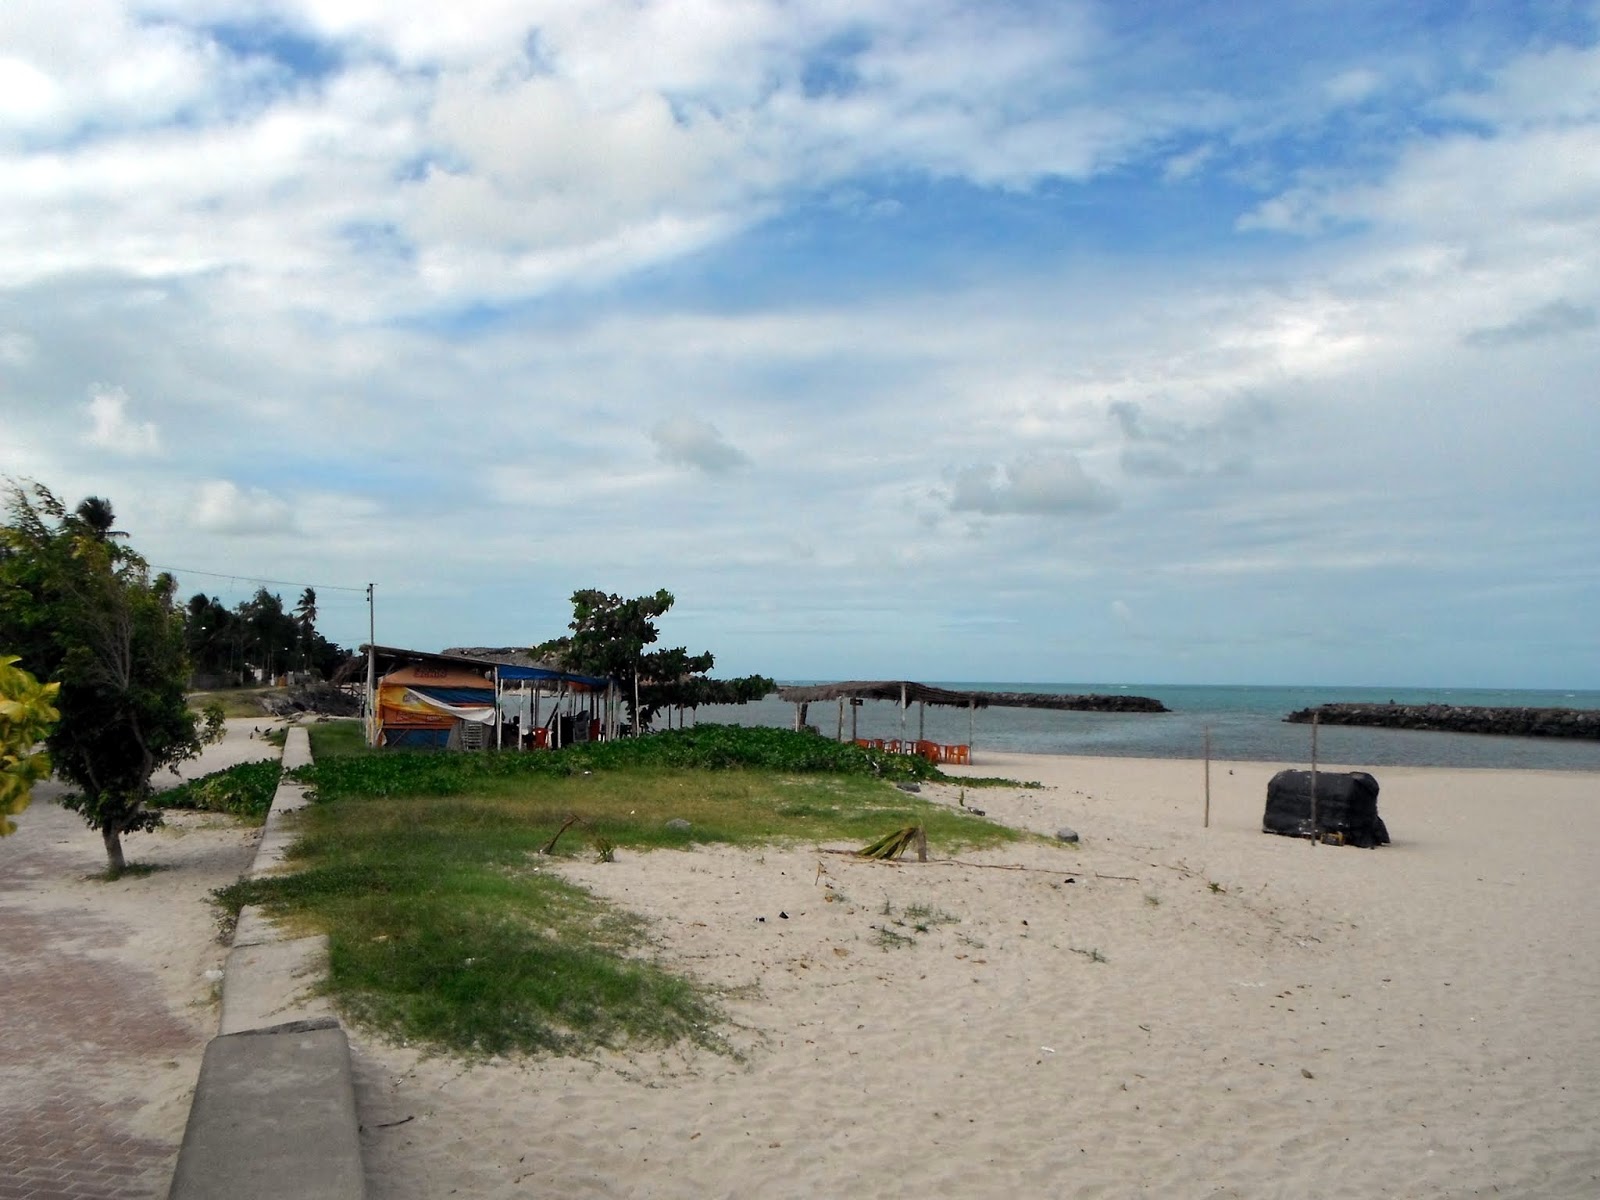 Fotografie cu Praia do Janga - locul popular printre cunoscătorii de relaxare